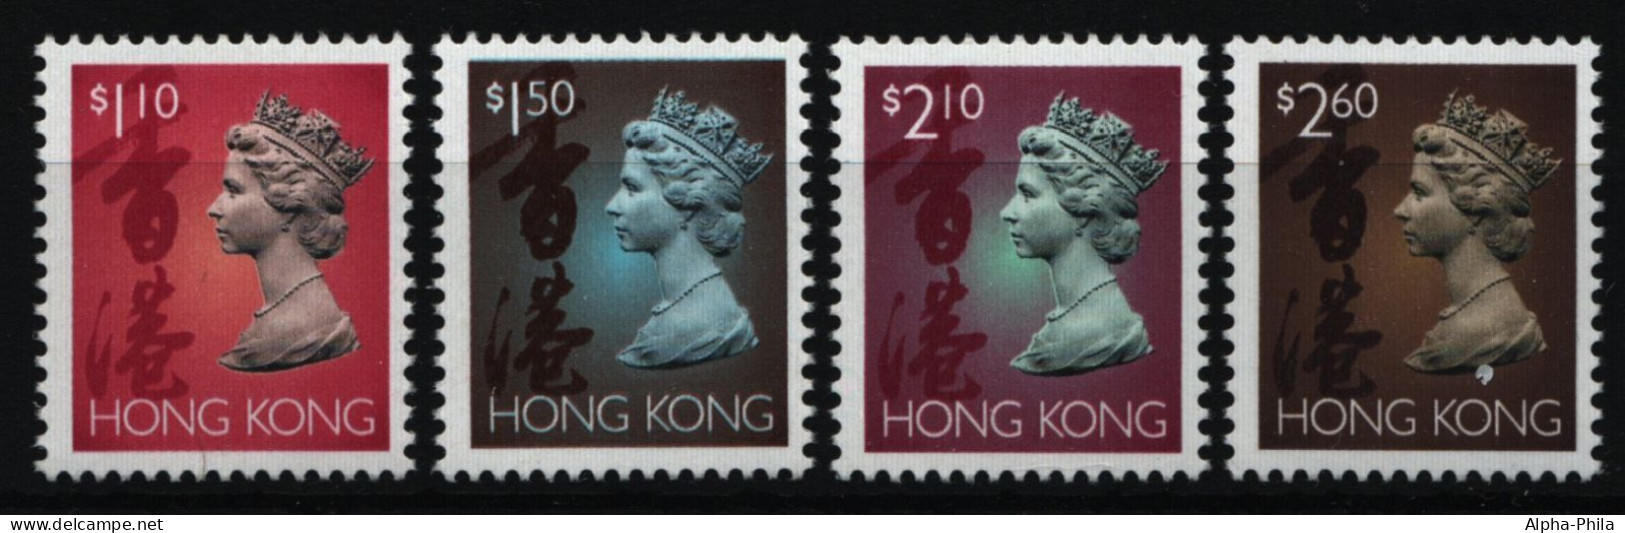 Hongkong 1995 - Mi-Nr. 744-747 I X ** - MNH - Freimarken - Queen Elizabeth II - Ungebraucht